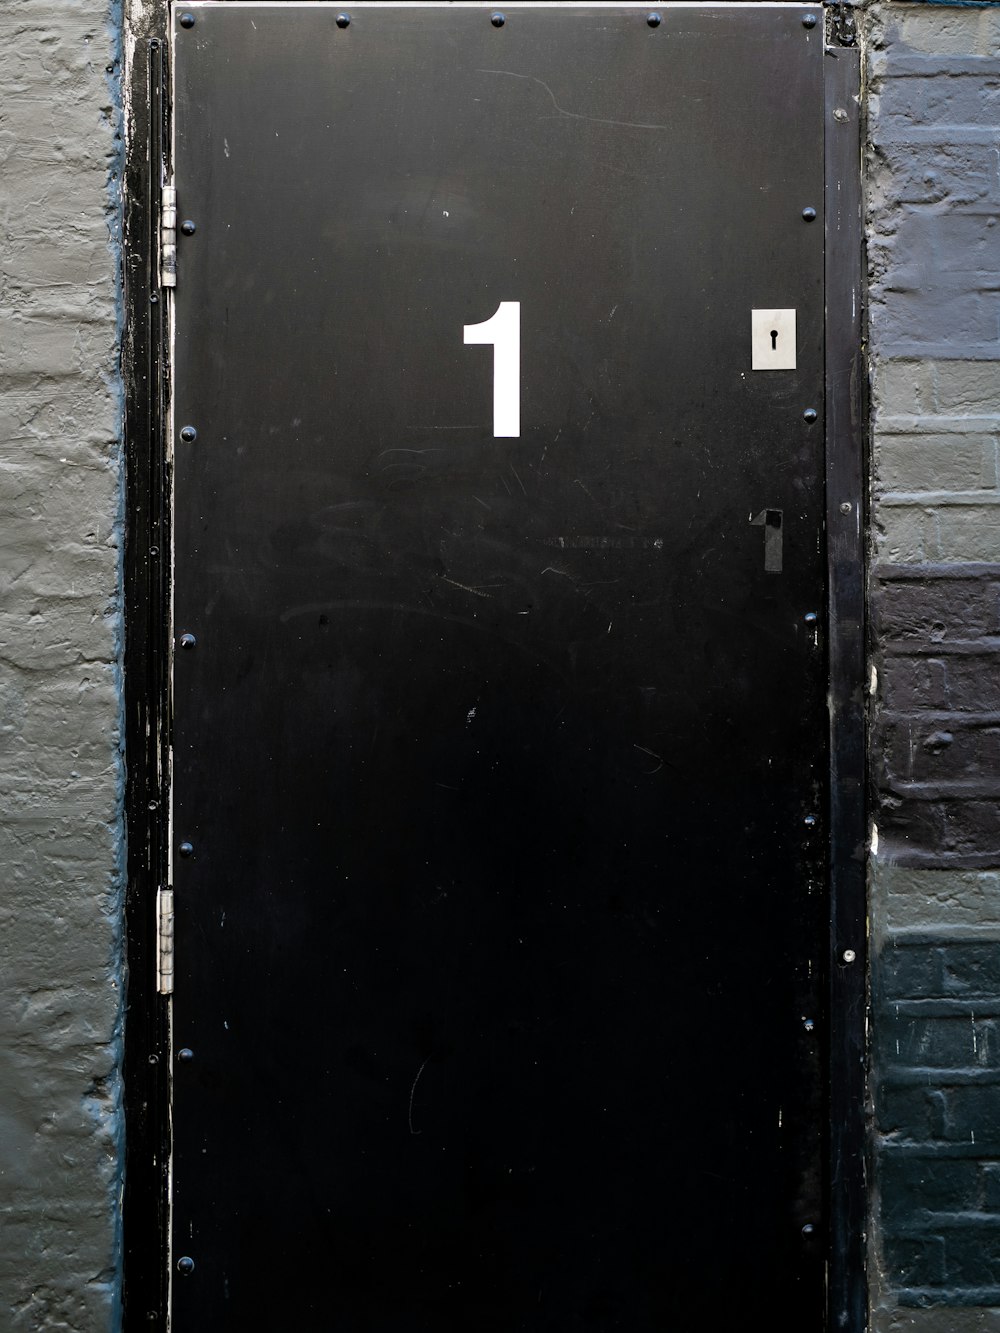 puerta de madera negra con número 2 blanco